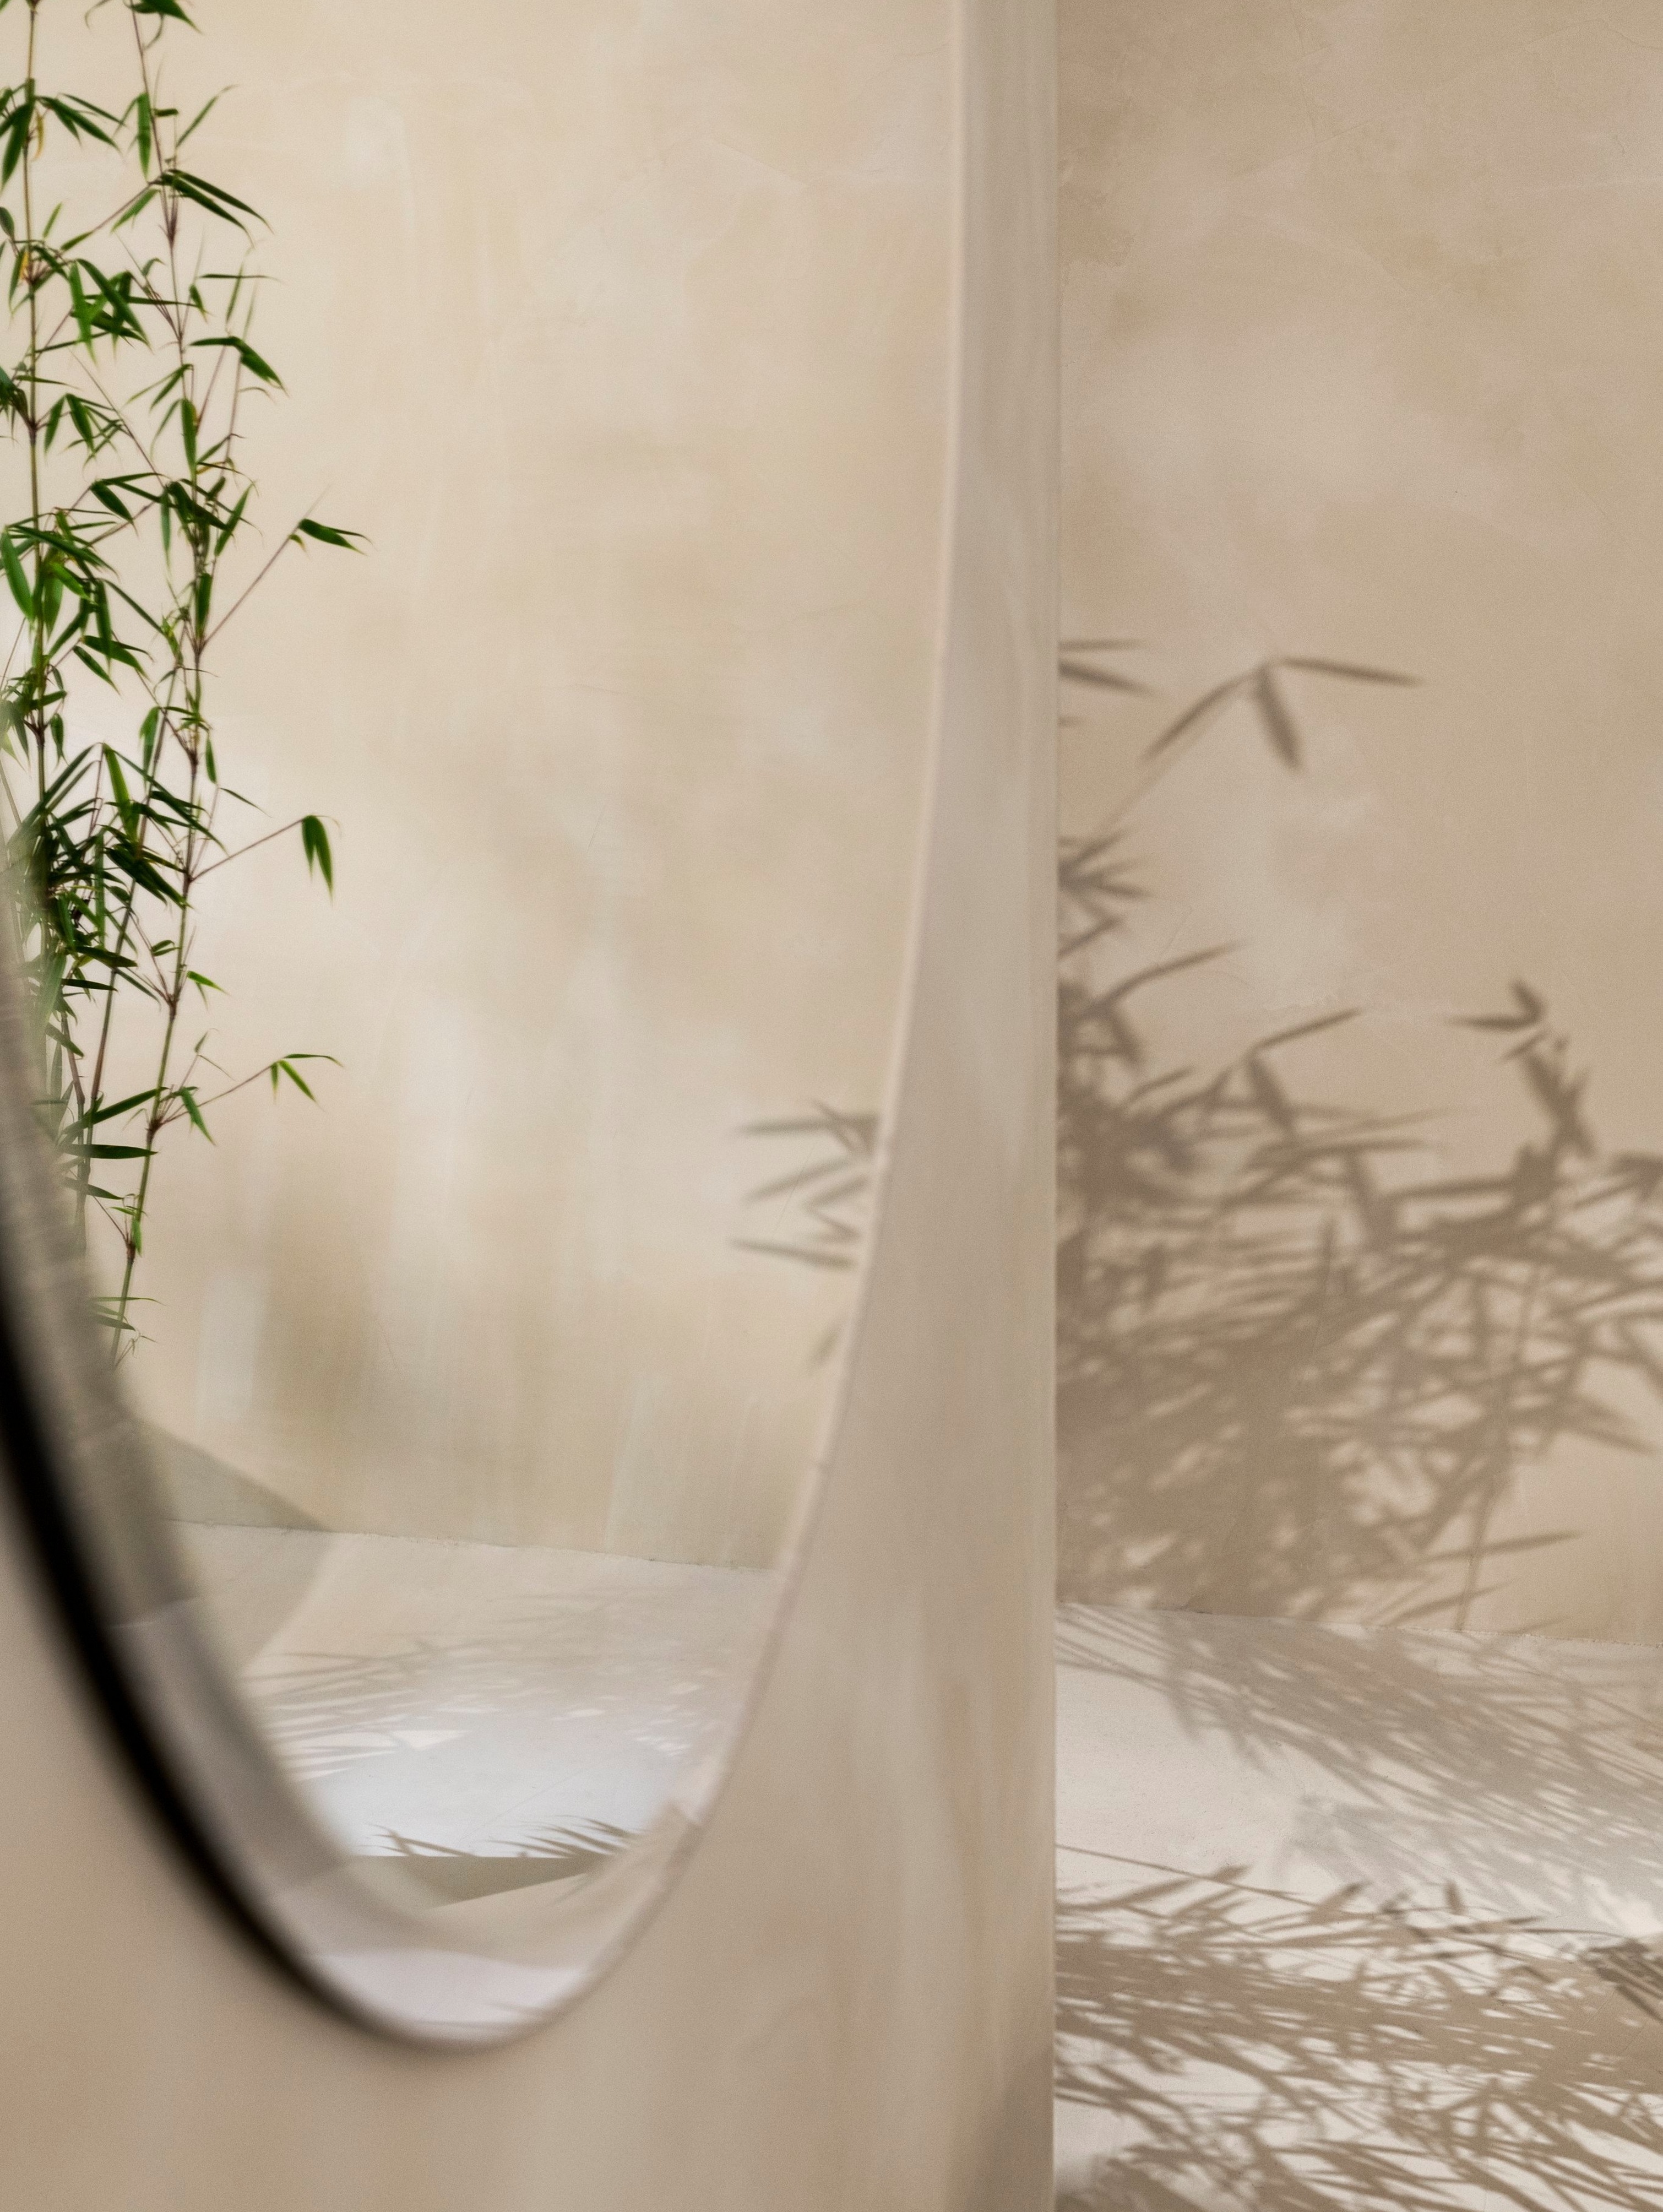 Kulaté zrcadlo Tone zavěšené na stěně a v něm se odrážející rostlina.